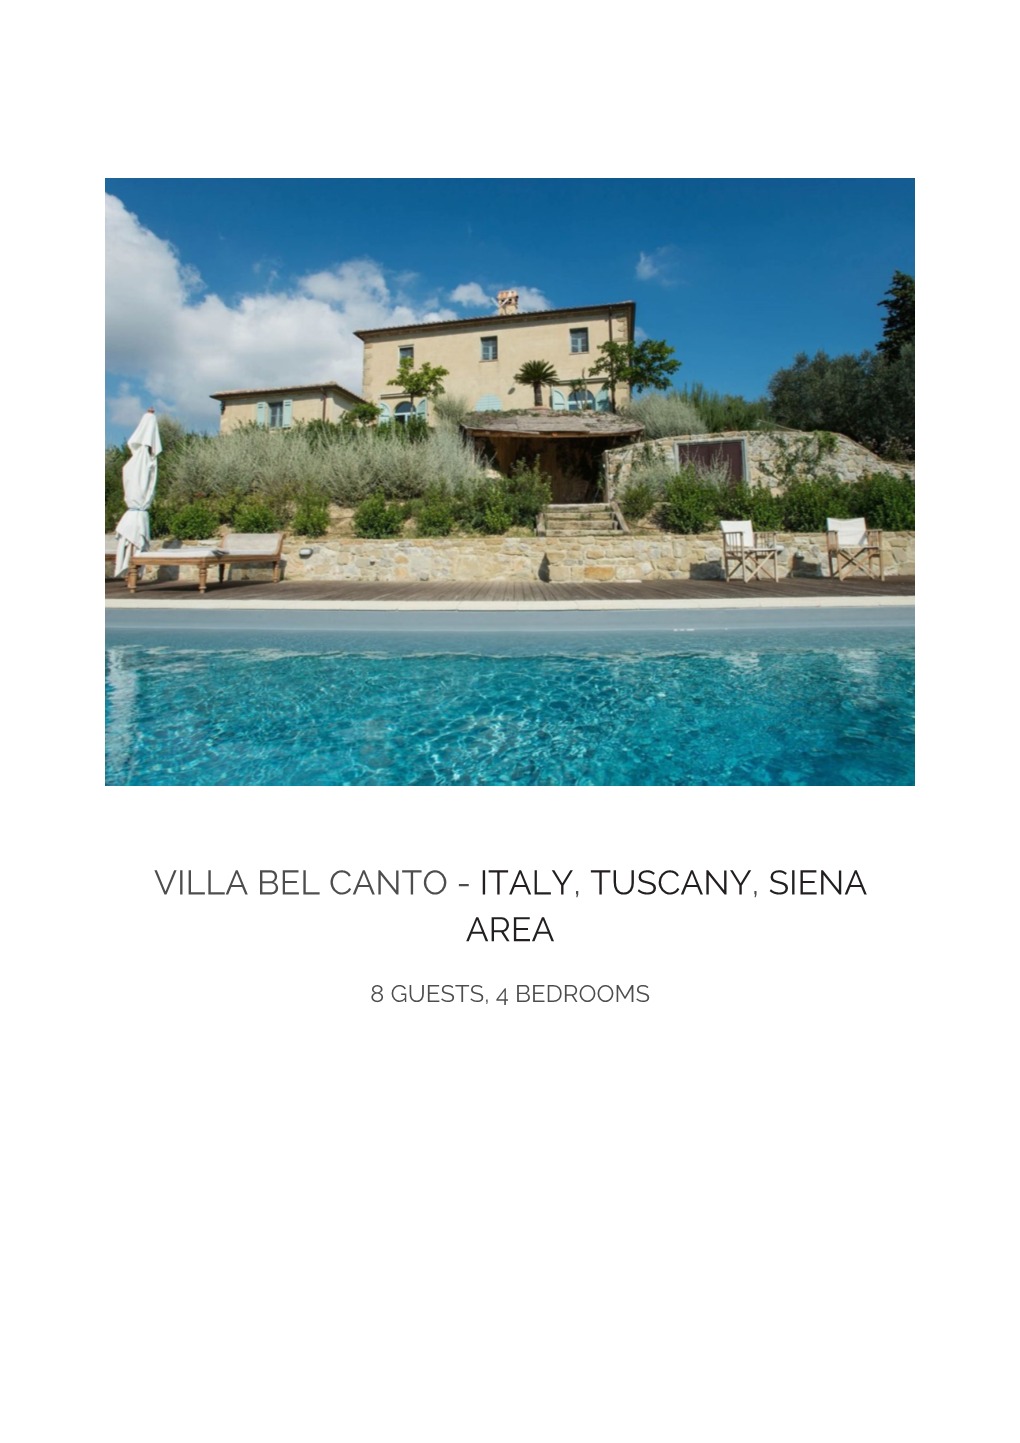 Villa Bel Canto - Italy, Tuscany, Siena Area